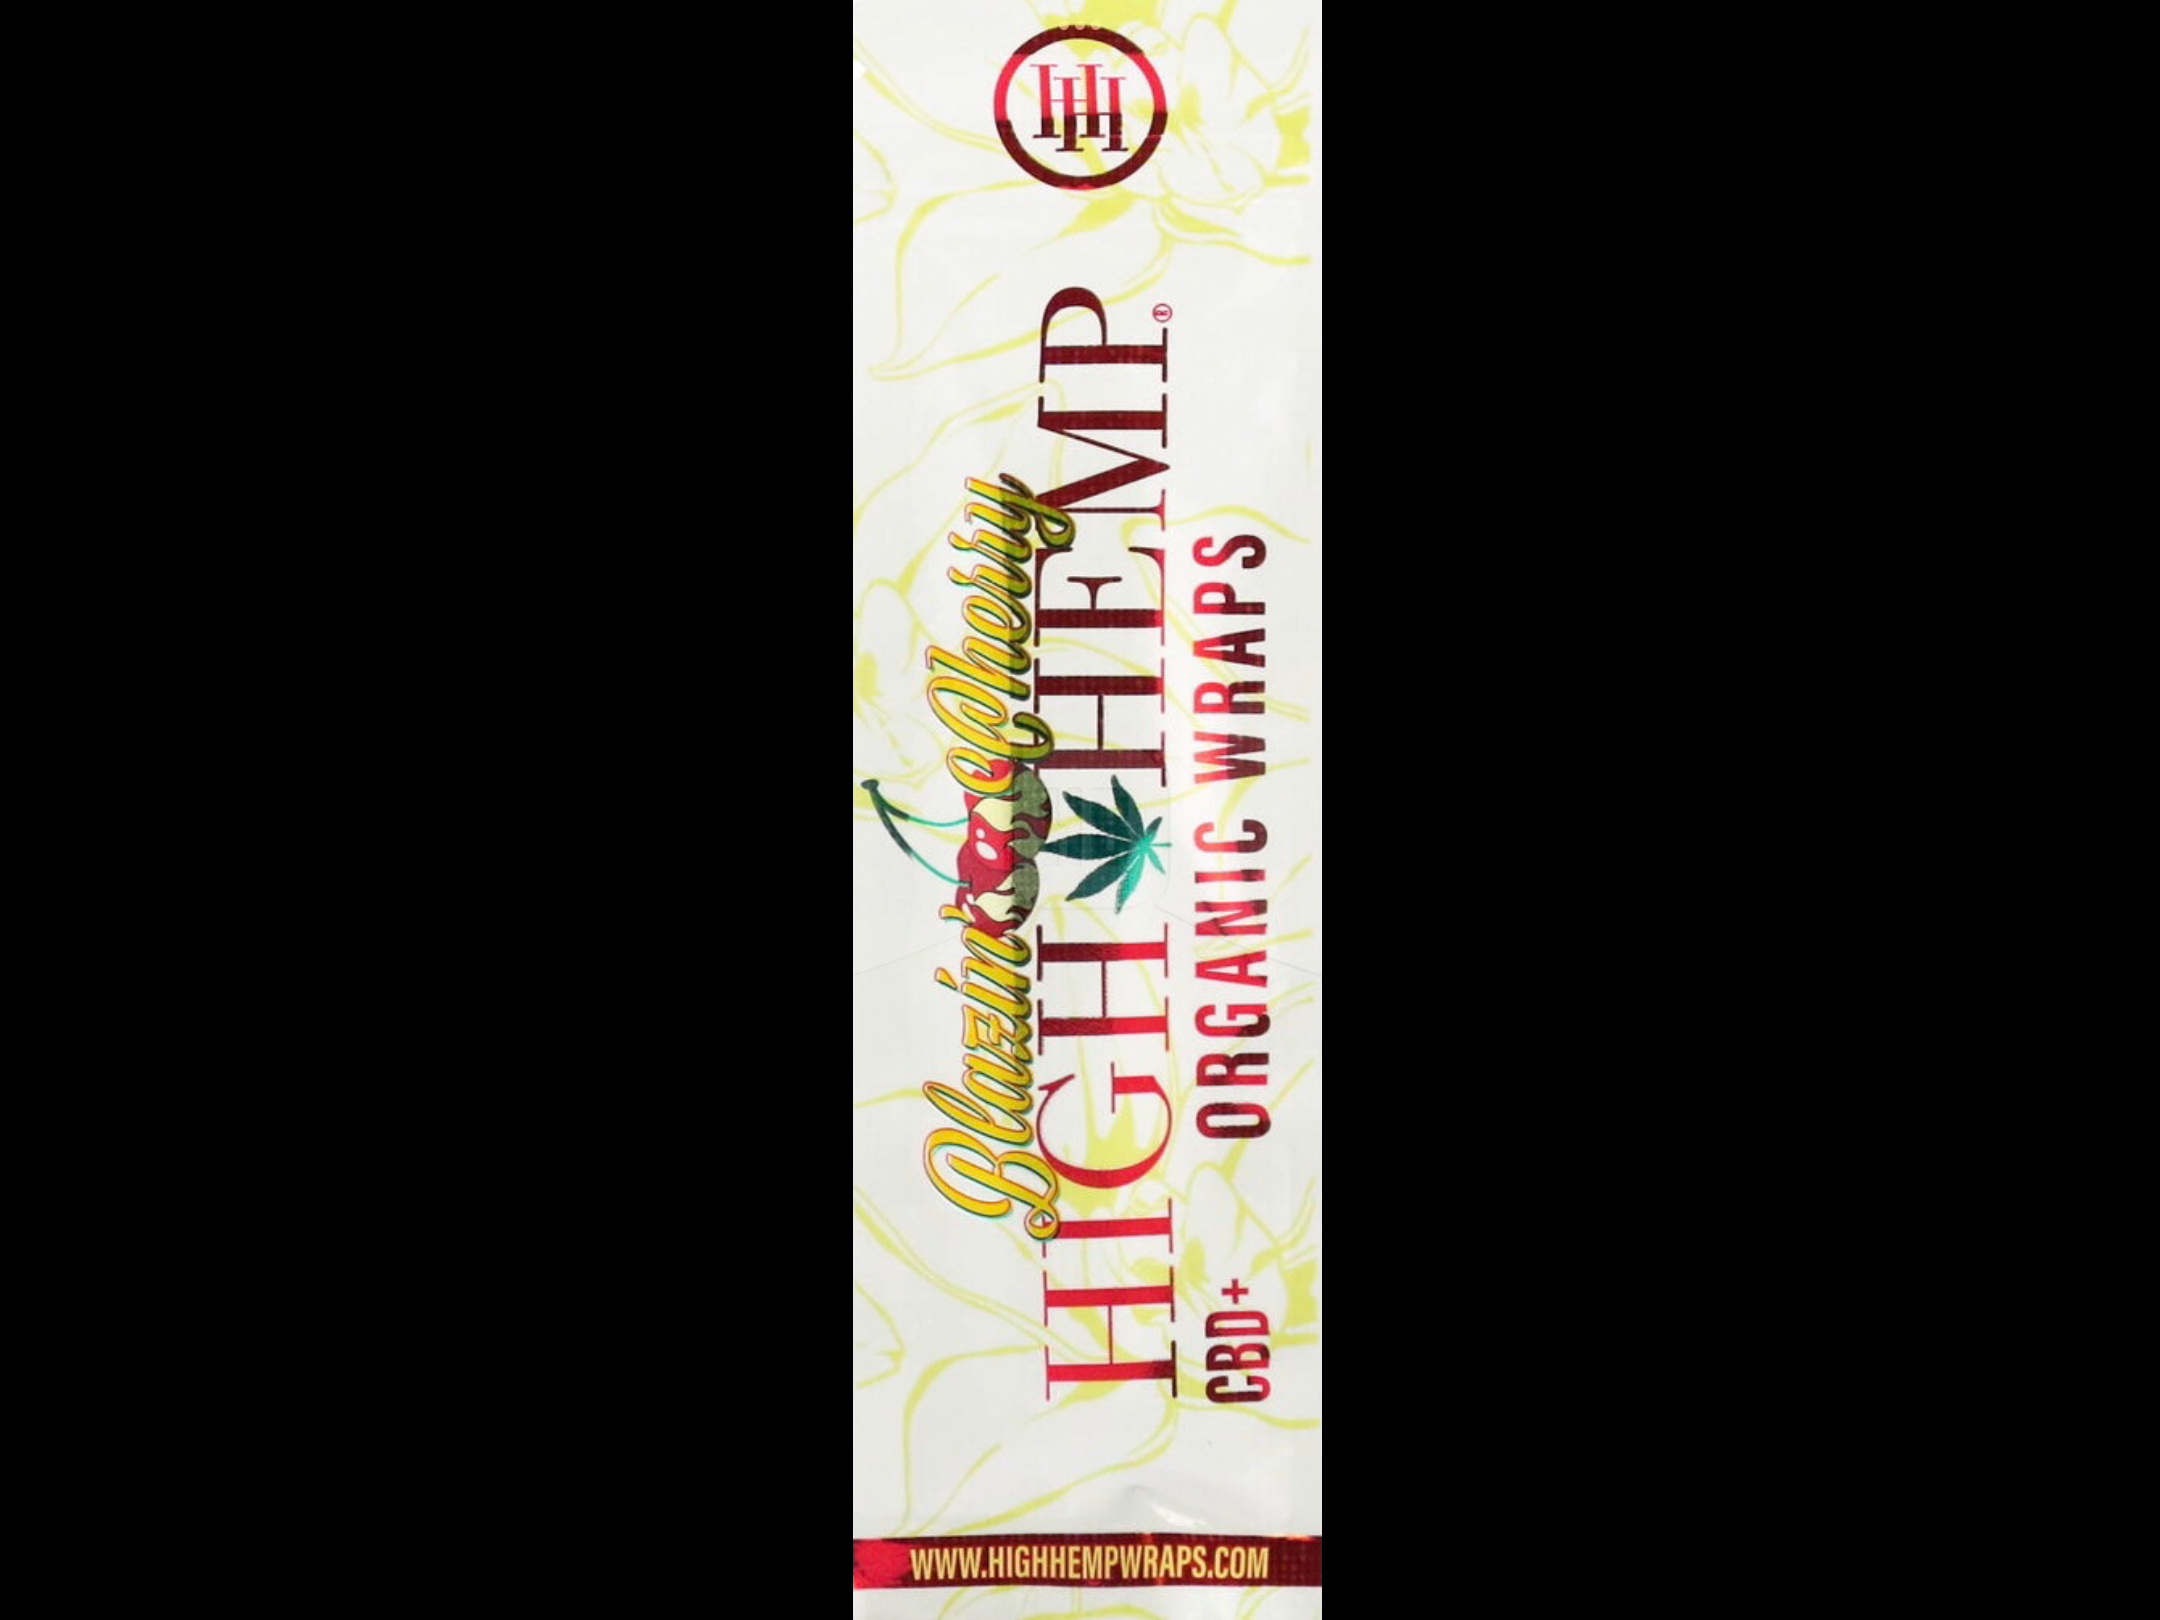 HIGH HEMP Organics (Wraps)